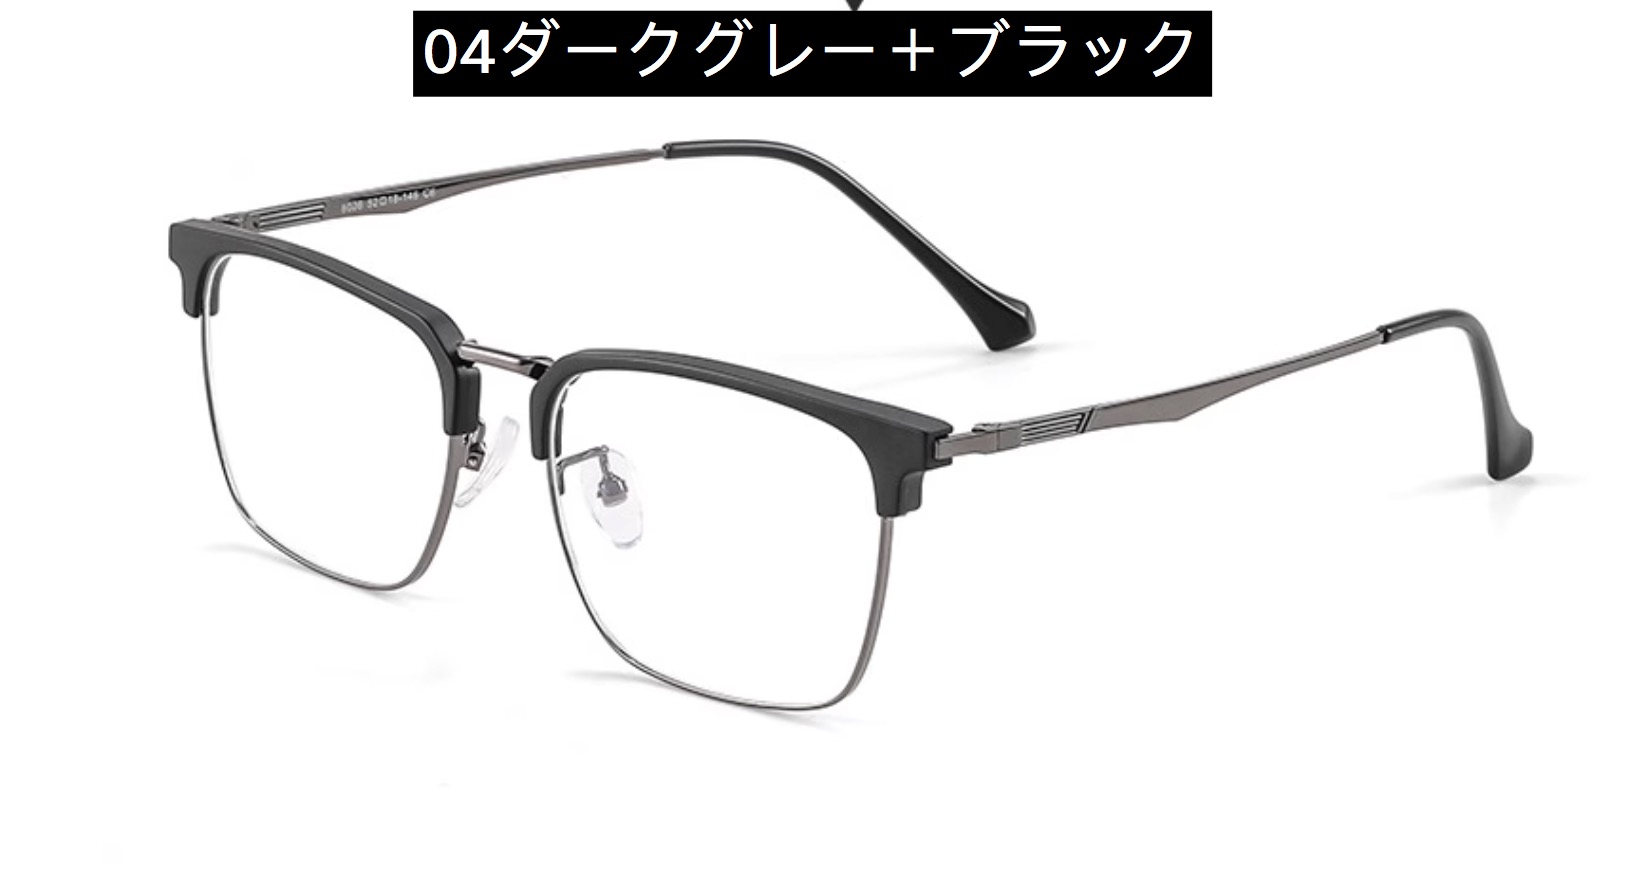 ハーフリム メガネ度付き知的メガネ 安い男性かっこいい軽量メタル